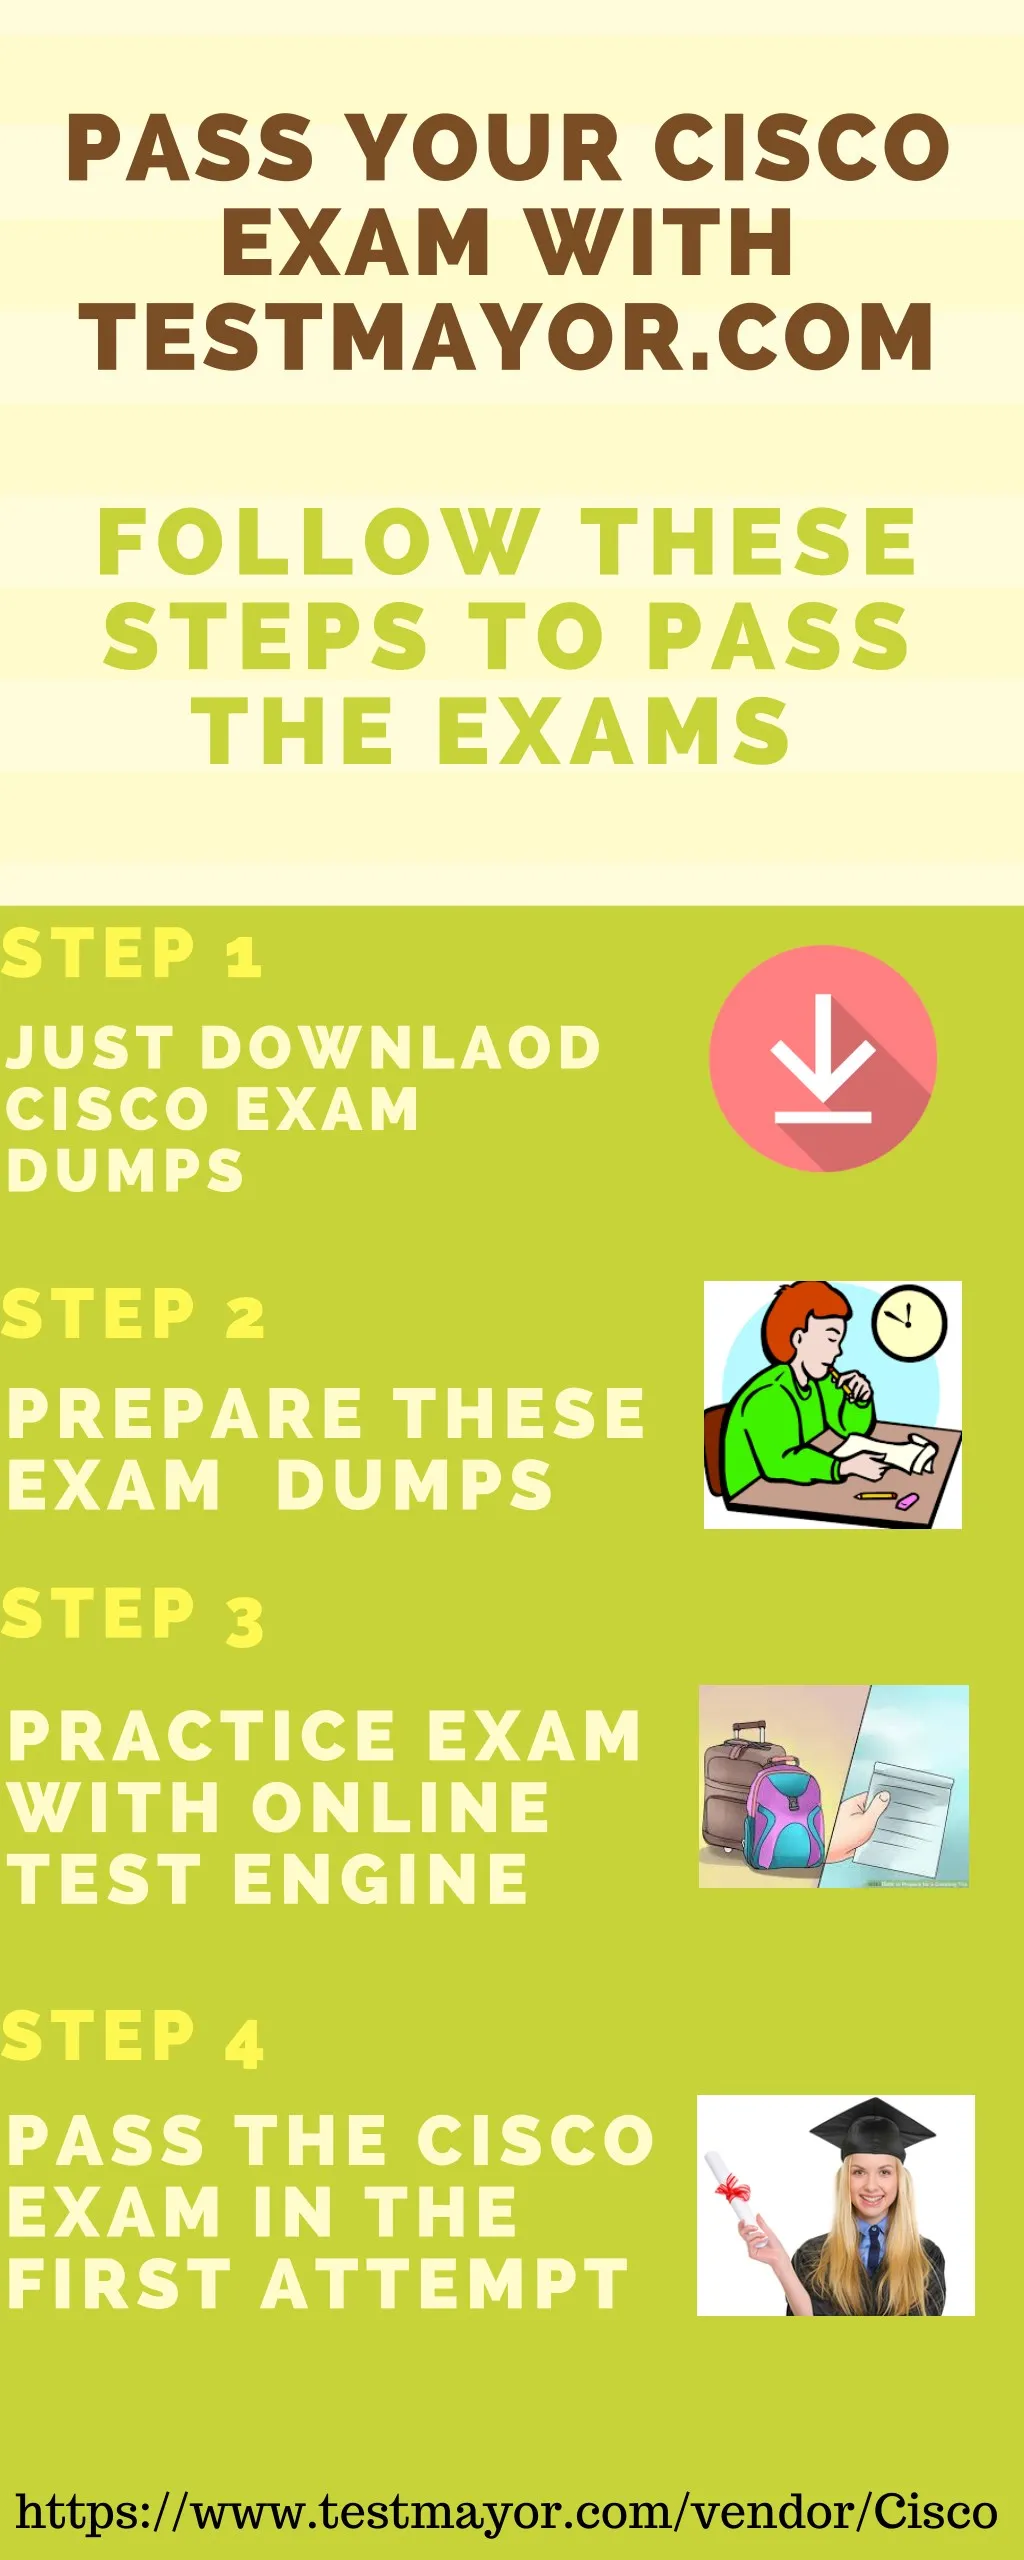 pass your cisco exam with testmayor com